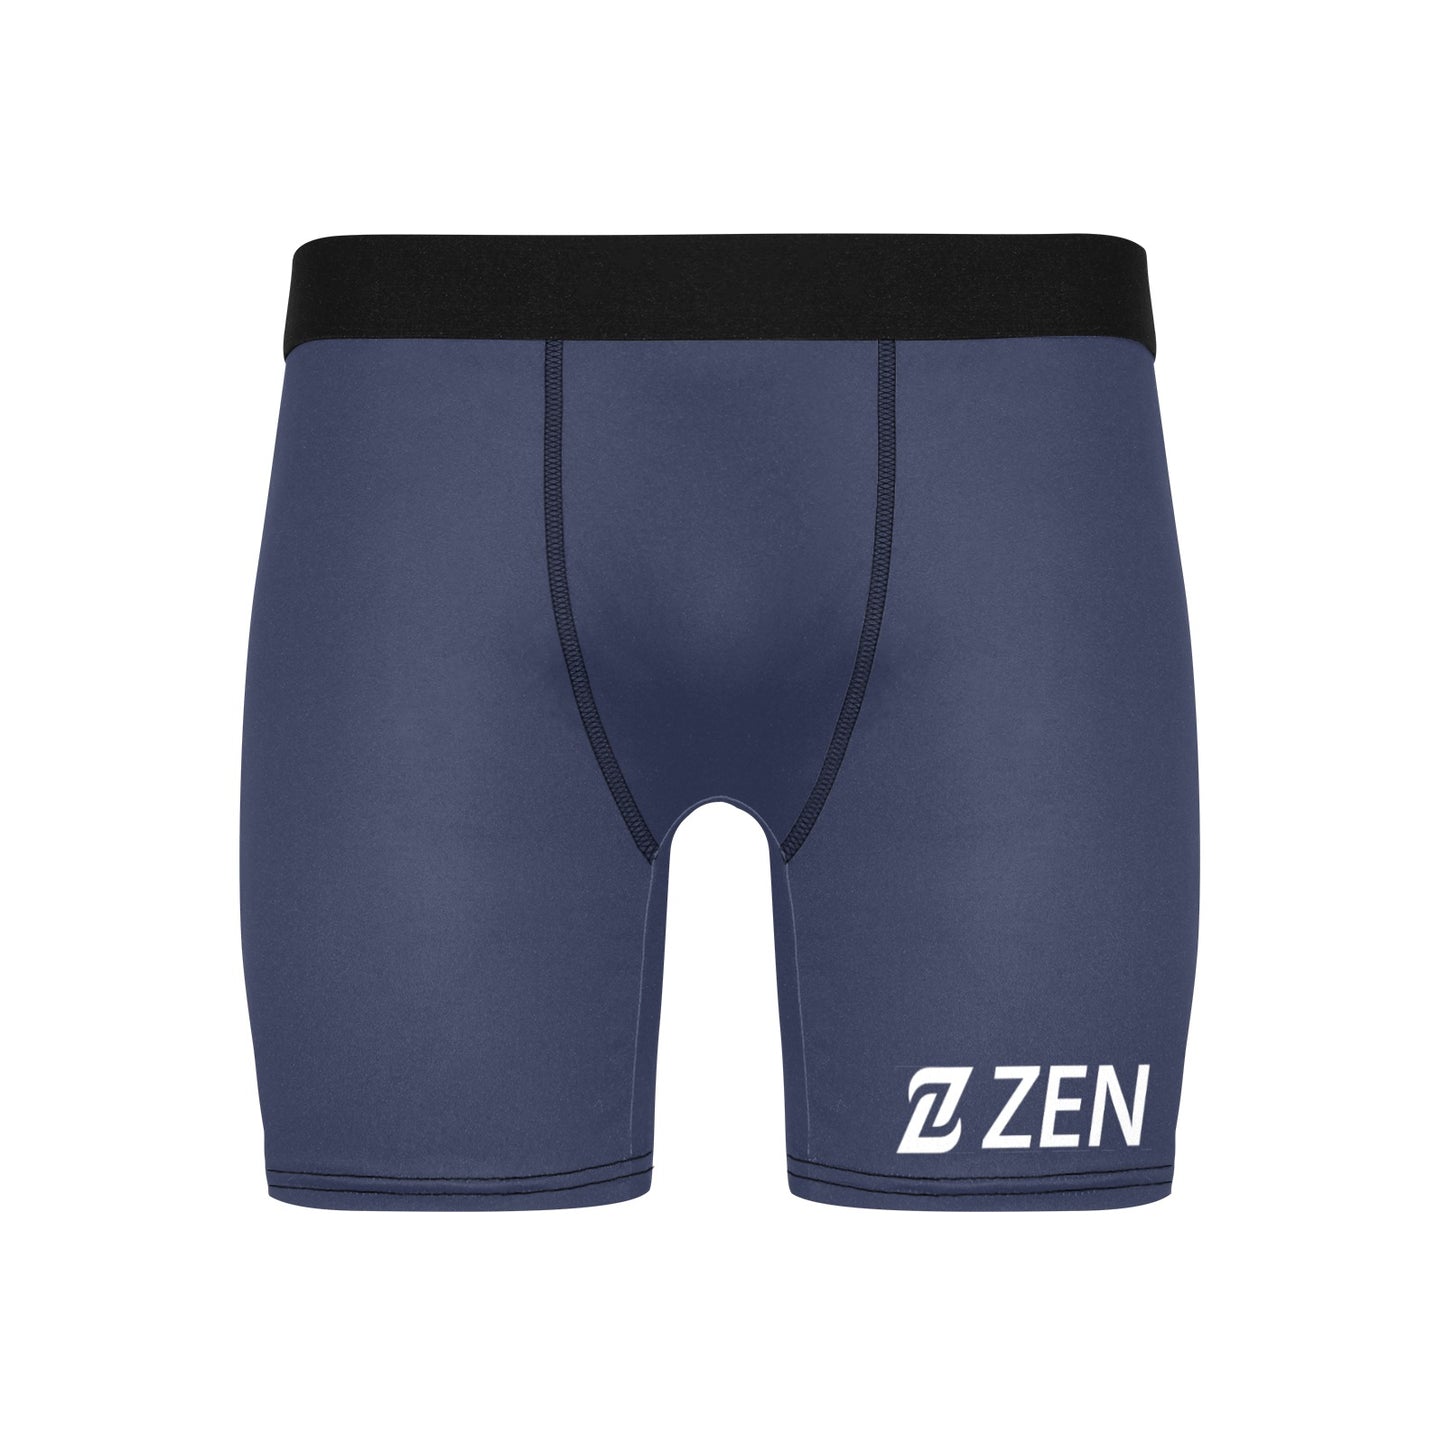 Zen Boxers Long - Navy